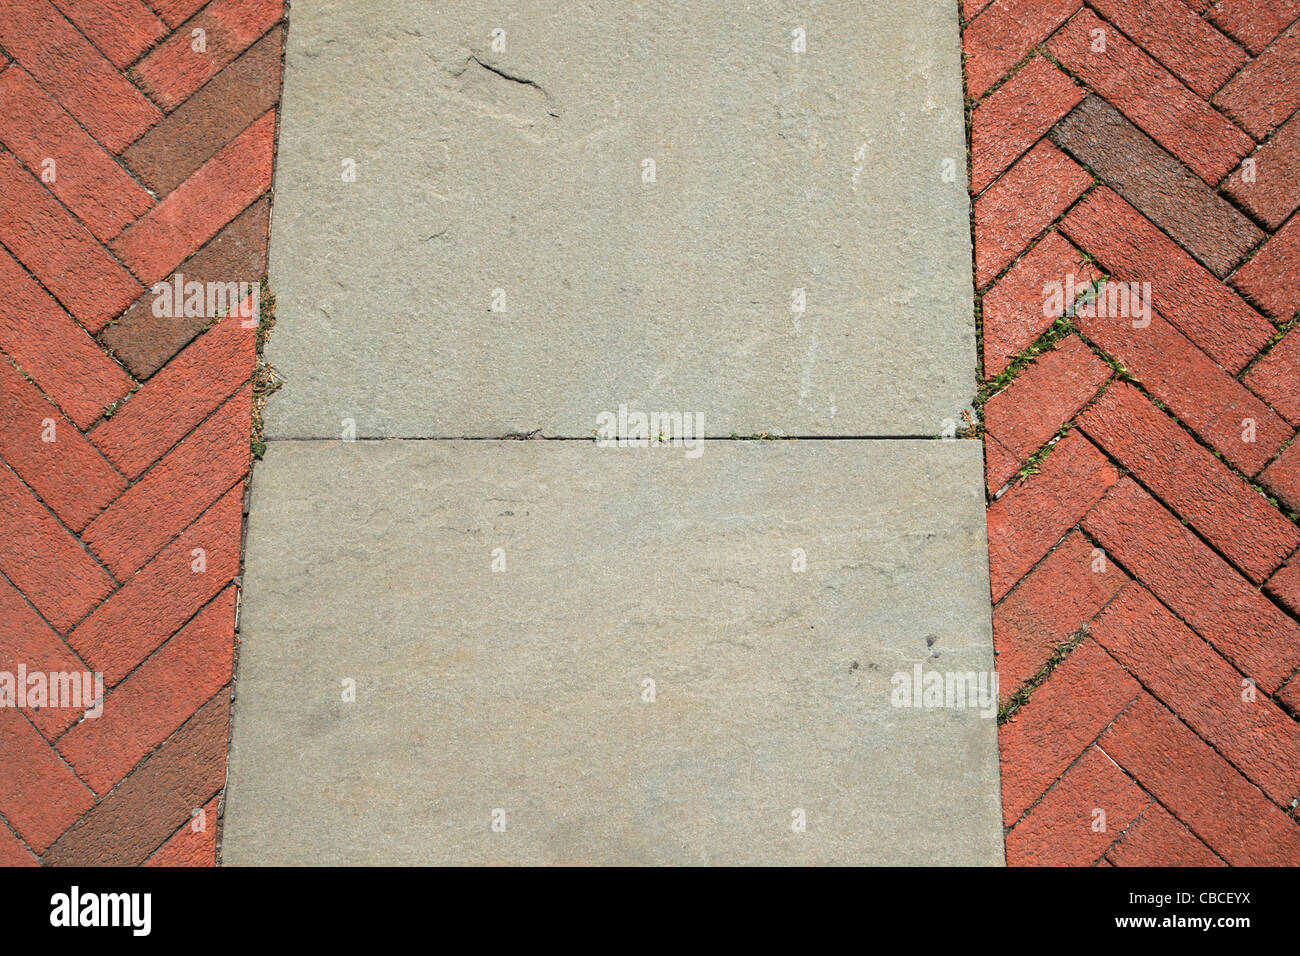 Espina de Pez rojo ladrillo y piedra de arena gris walkway detalle Foto de stock